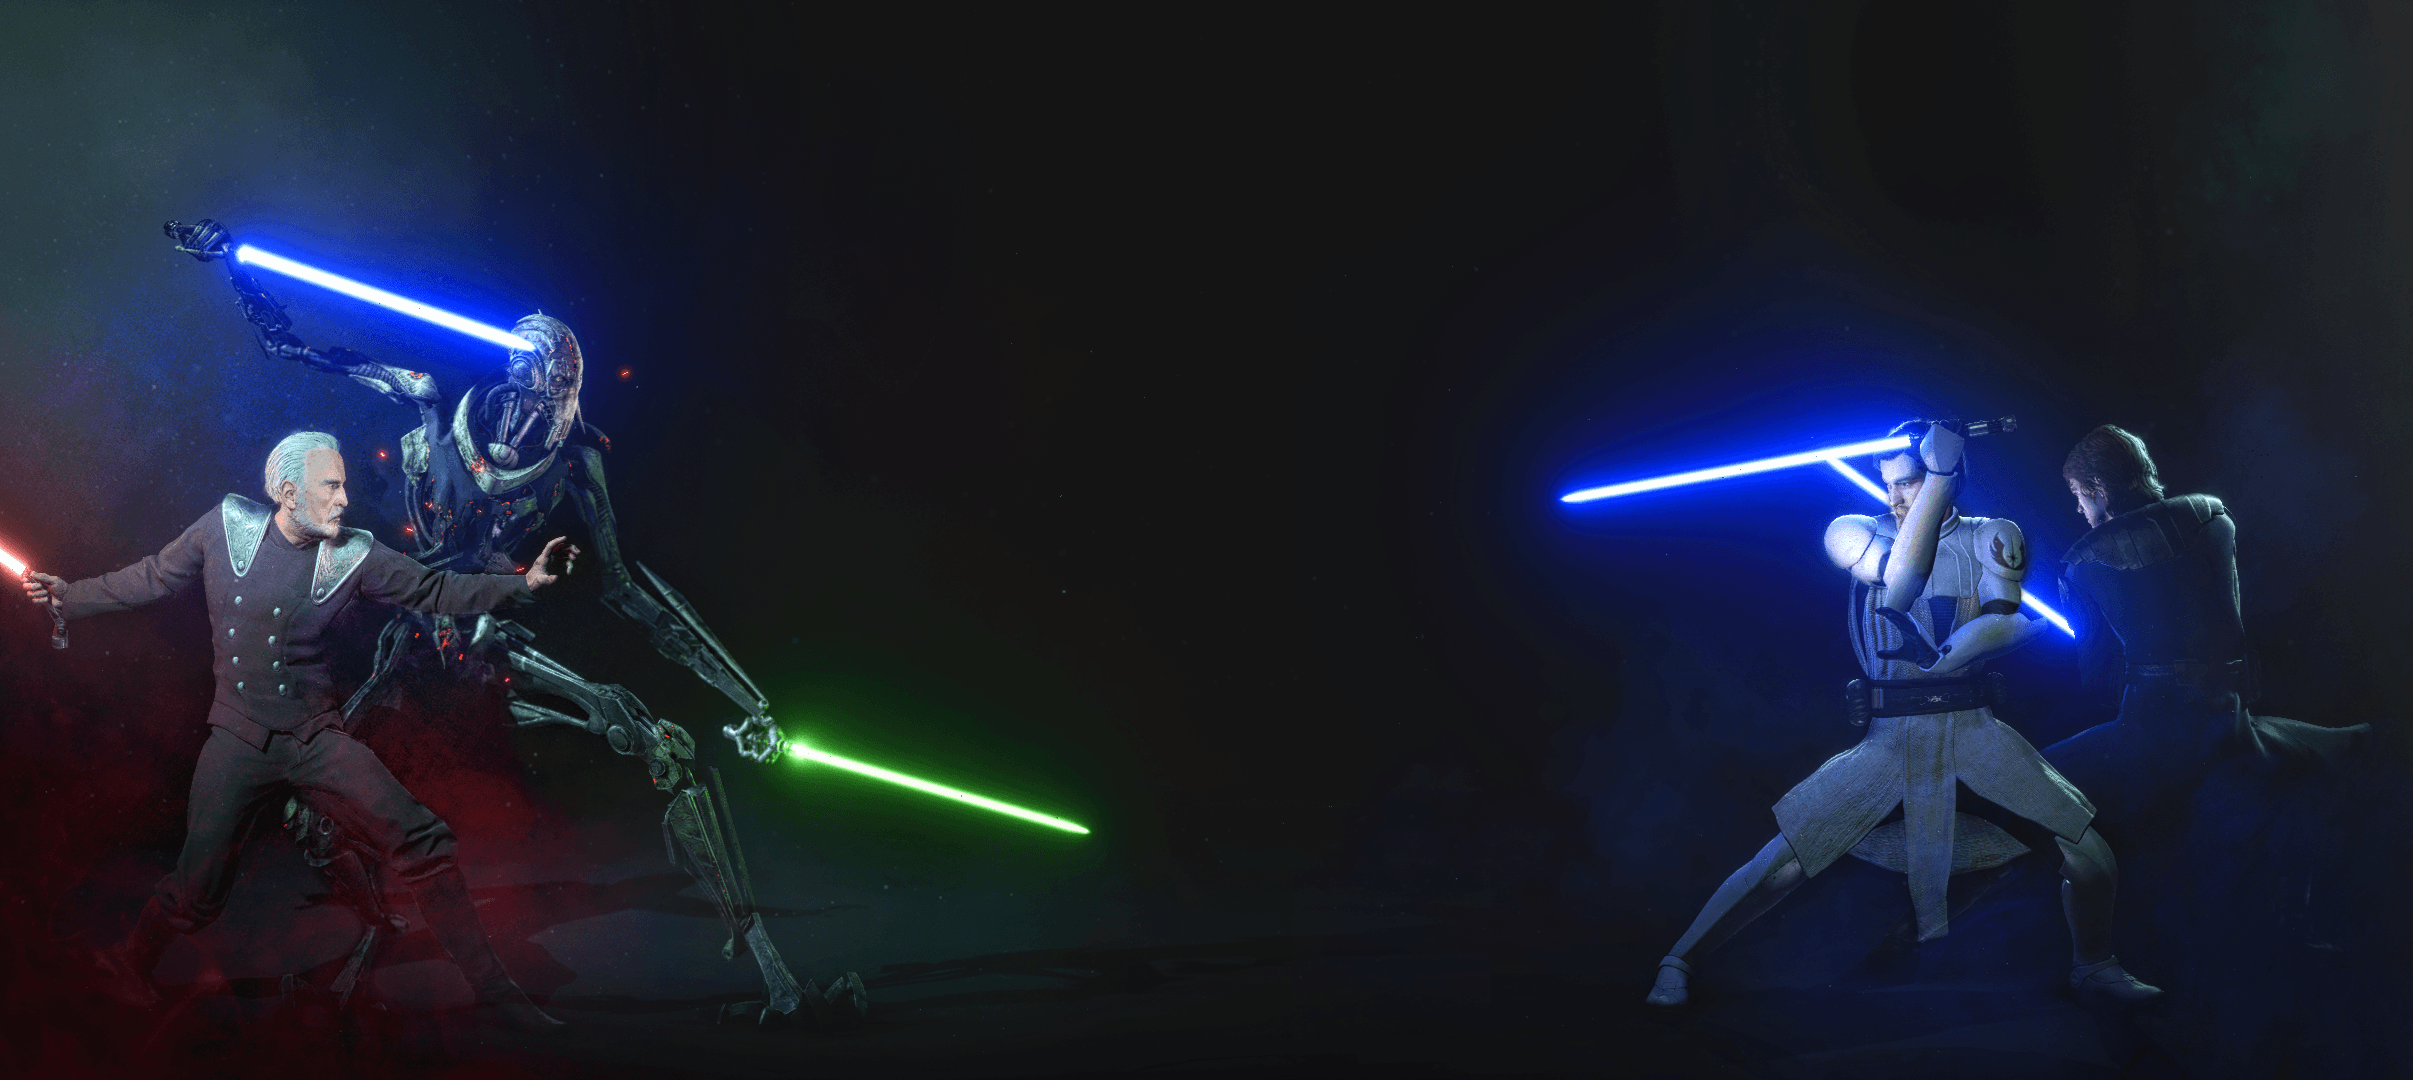 Count Dooku & General Grievous Vs Anakin Skywalker & Obi Wan